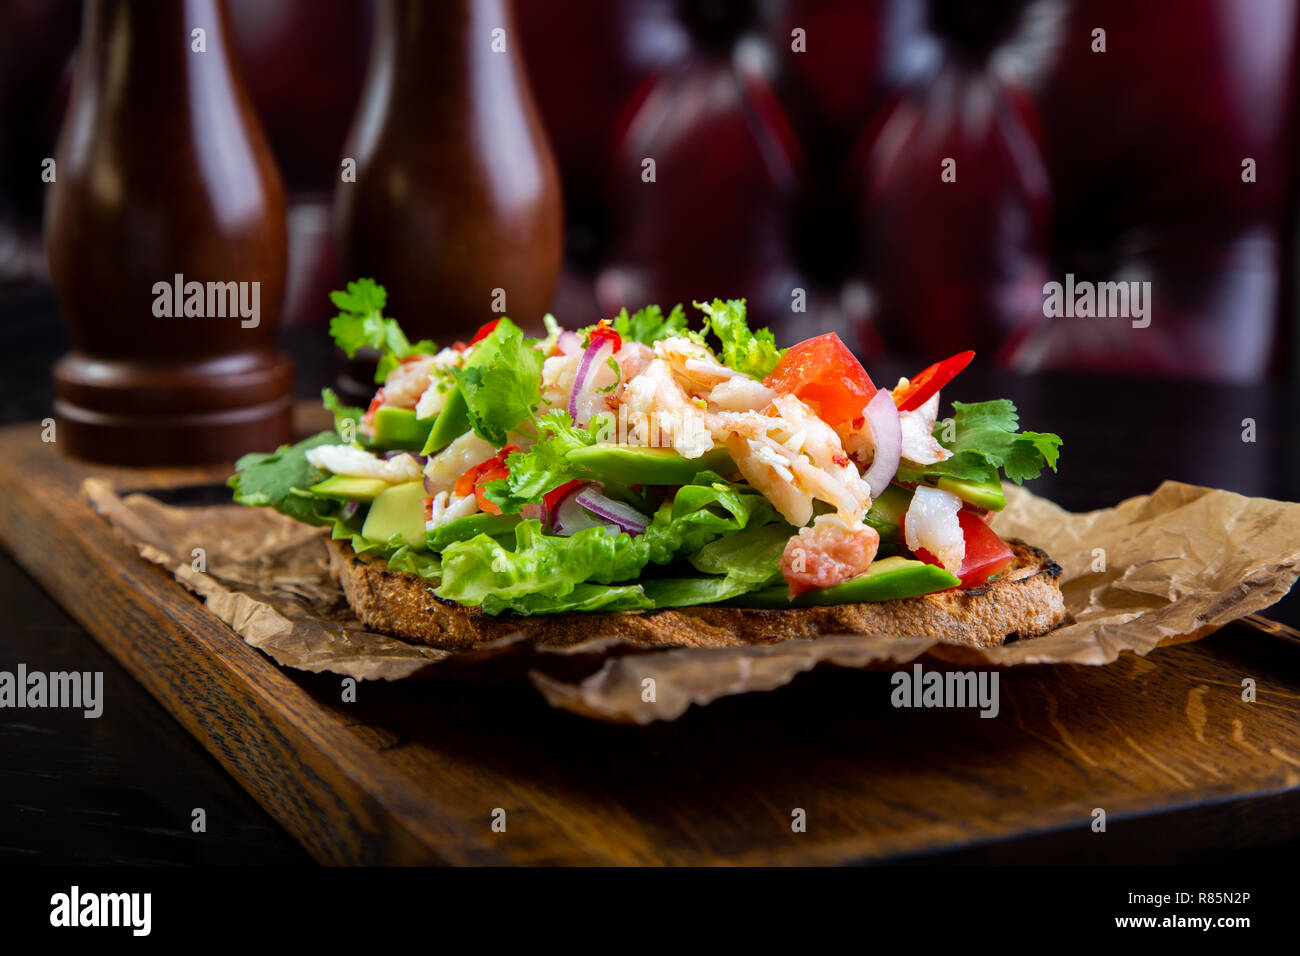 Bruschetta délicieux à la viande de crabe dans le fond. Nourriture exclusive sain servi sur une planche en bois et papier d'artisanat Banque D'Images